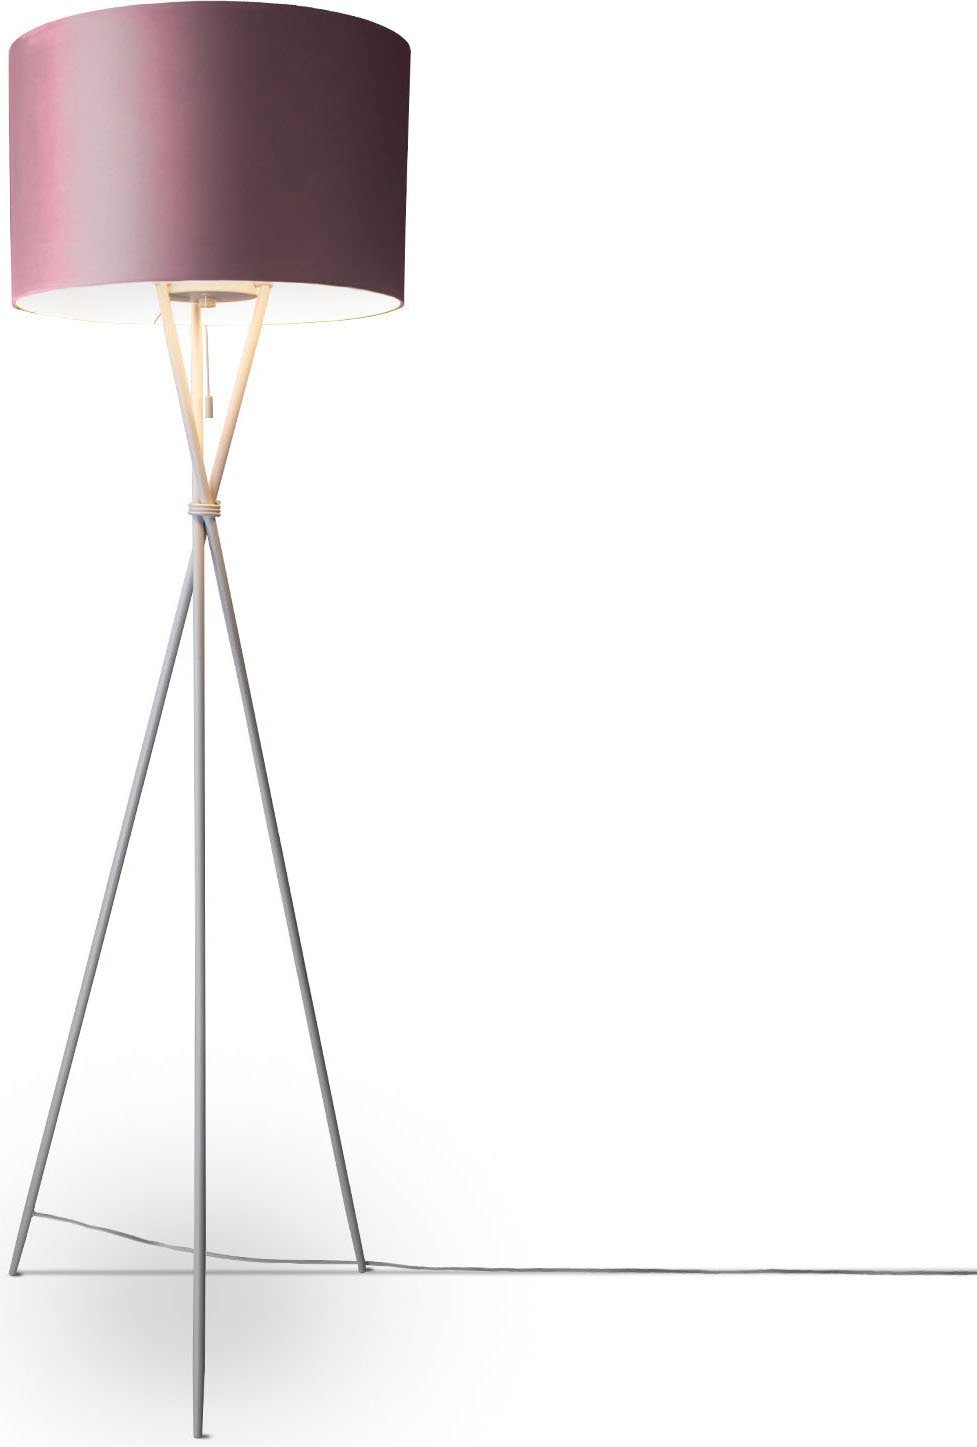 Paco Home Stehlampe Kate uni Color, ohne Leuchtmittel, Wohnzimmer Dreibein Standleuchte Velour Höhe 177,5cm Filigran E27 pink | Standleuchten